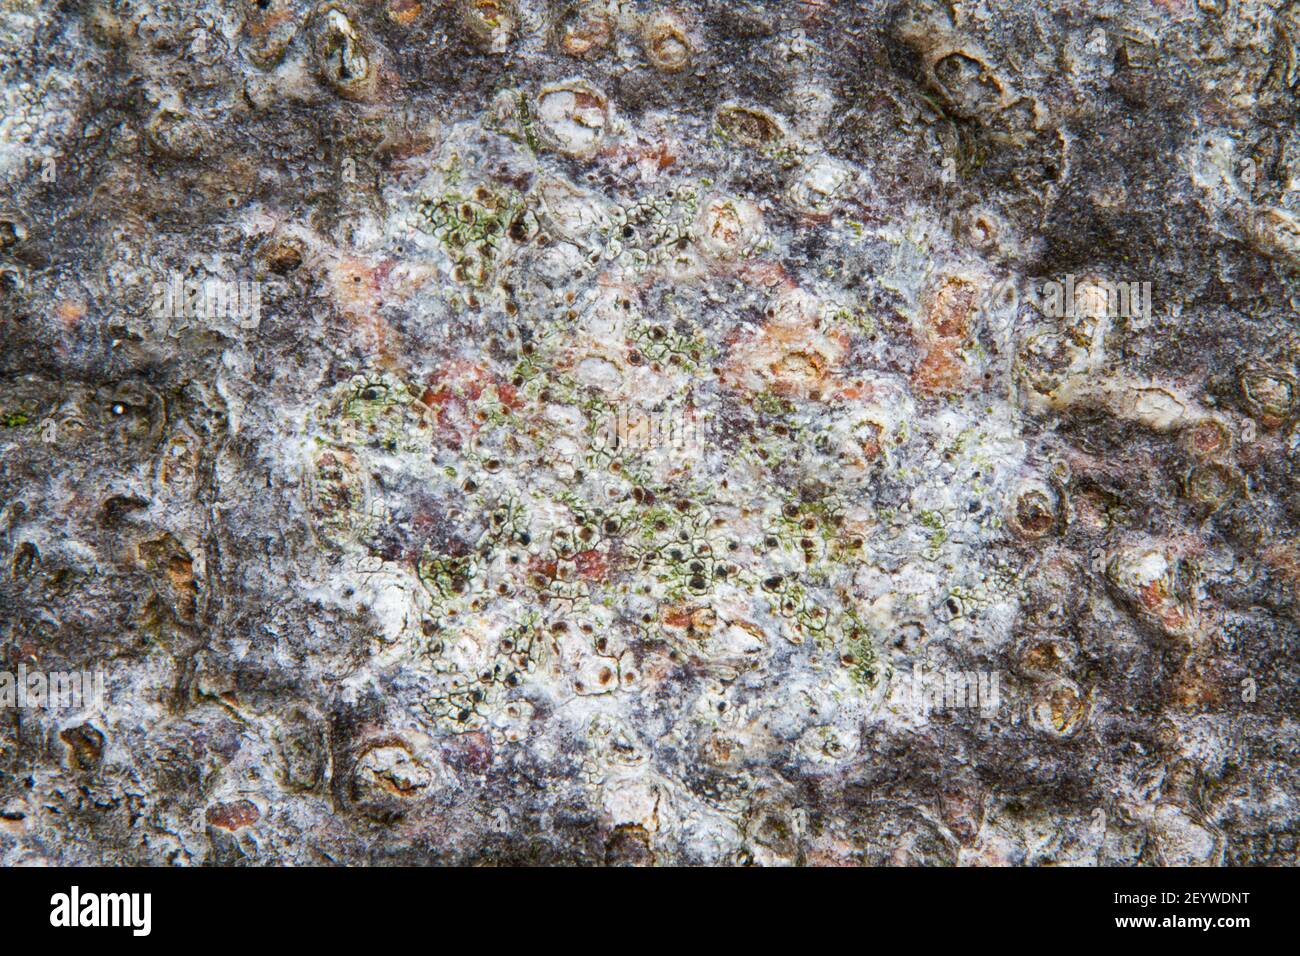 Primo piano di un lichene che cresce sulla corteccia di un faggio, probabilmente lichene di vernice bianco Foto Stock